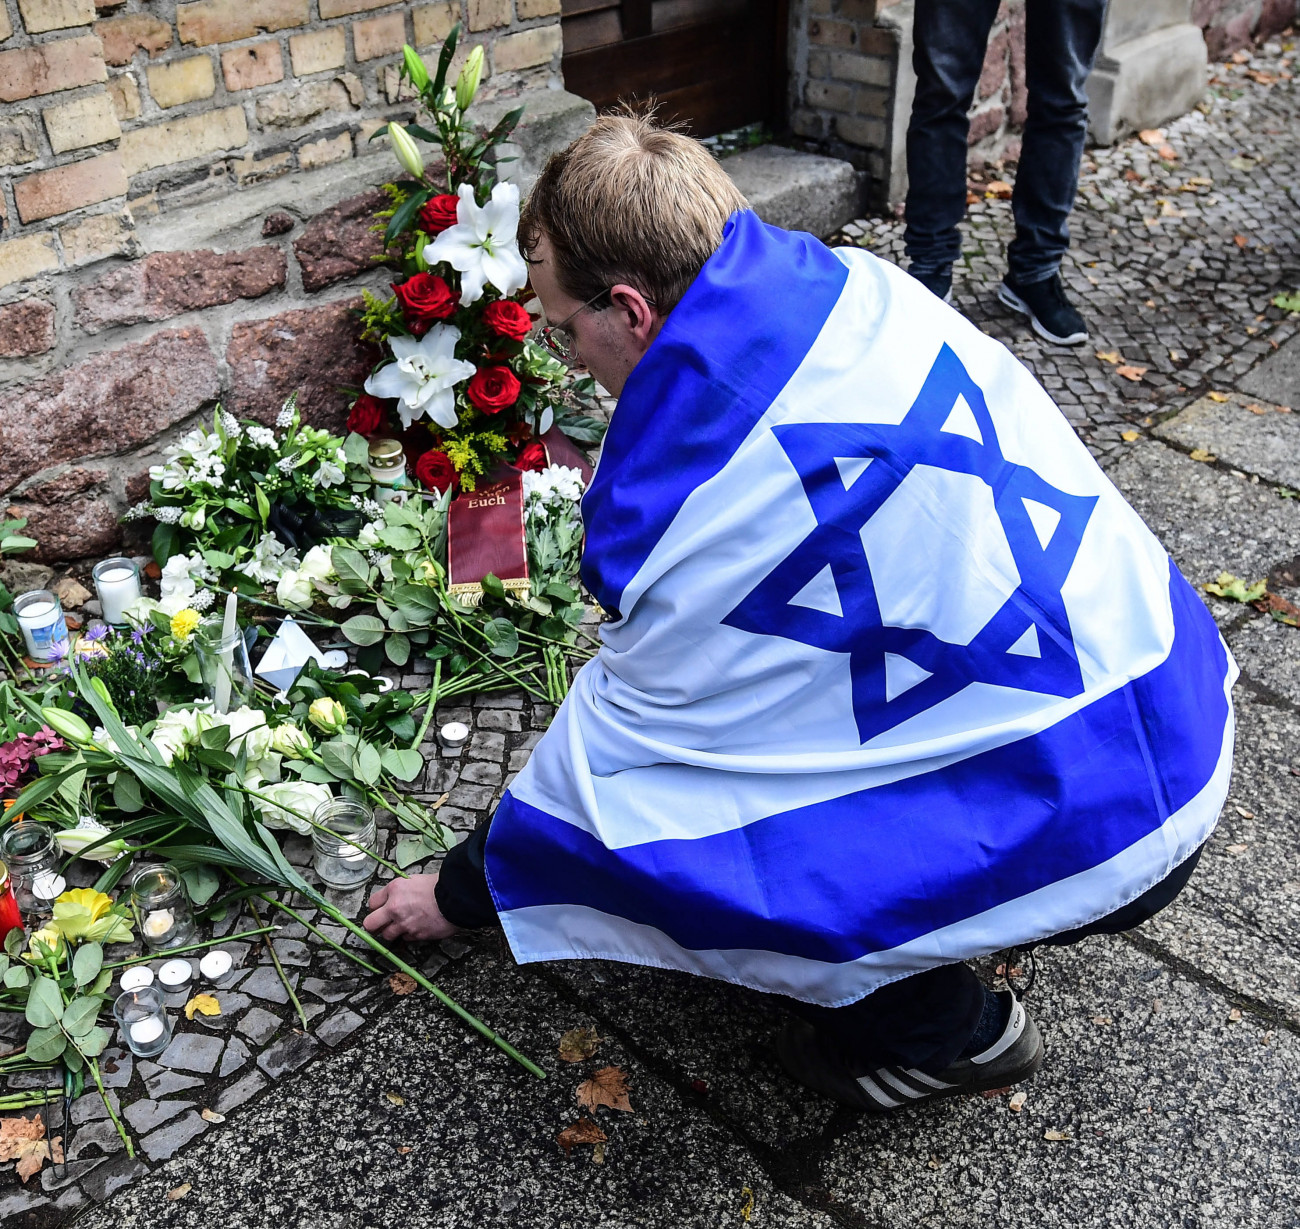 Halle, 2019. október 10.
Virágot helyez el egy izraeli zászlóba burkolózott férfi a hallei zsinagógánál a németországi városban előző nap elkövetett lövöldözés utáni napon, 2019. október 10-én. A tettes, egy 27 éves német neonáci férfi a sisakjára szerelt kamerával élőben közvetítette a zsinagóga elleni sikertelen támadását, majd azt, amint az utcán hátulról lelő egy fiatal nőt, aki éppen arra járt, majd autójával egy közeli török büféhez hajtott, amelyben lelőtt egy férfit, és elmenekült. Hallétól nagyjából 30 kilométerre fogták el, miután nekihajtott egy teherautónak. MTI/EPA/Filip Singer
MTI/EPA/Filip Singer